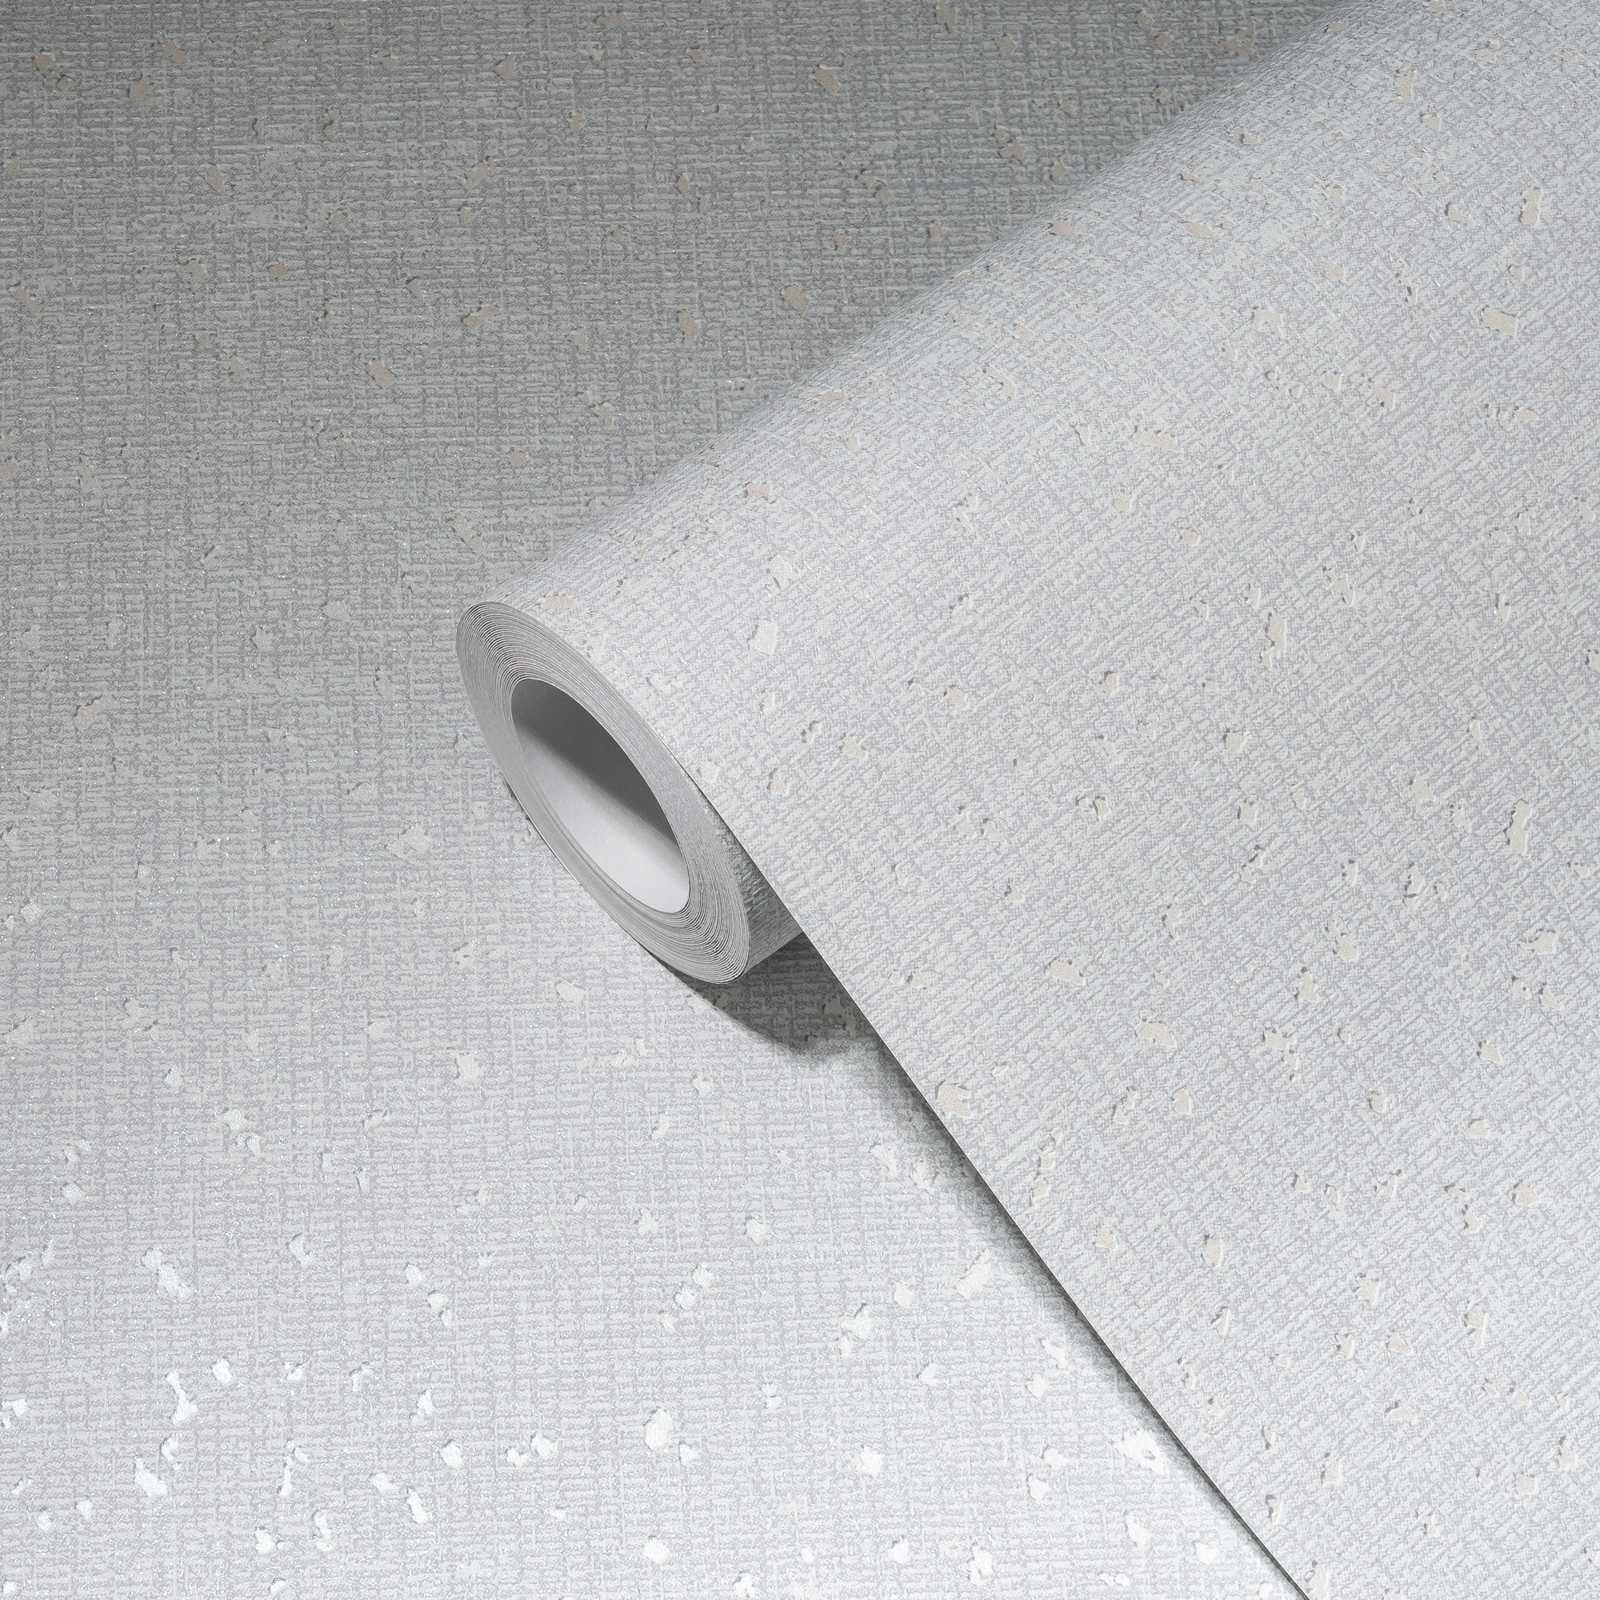             Carta da parati con struttura tessile e accenti metallici - bianco, grigio
        